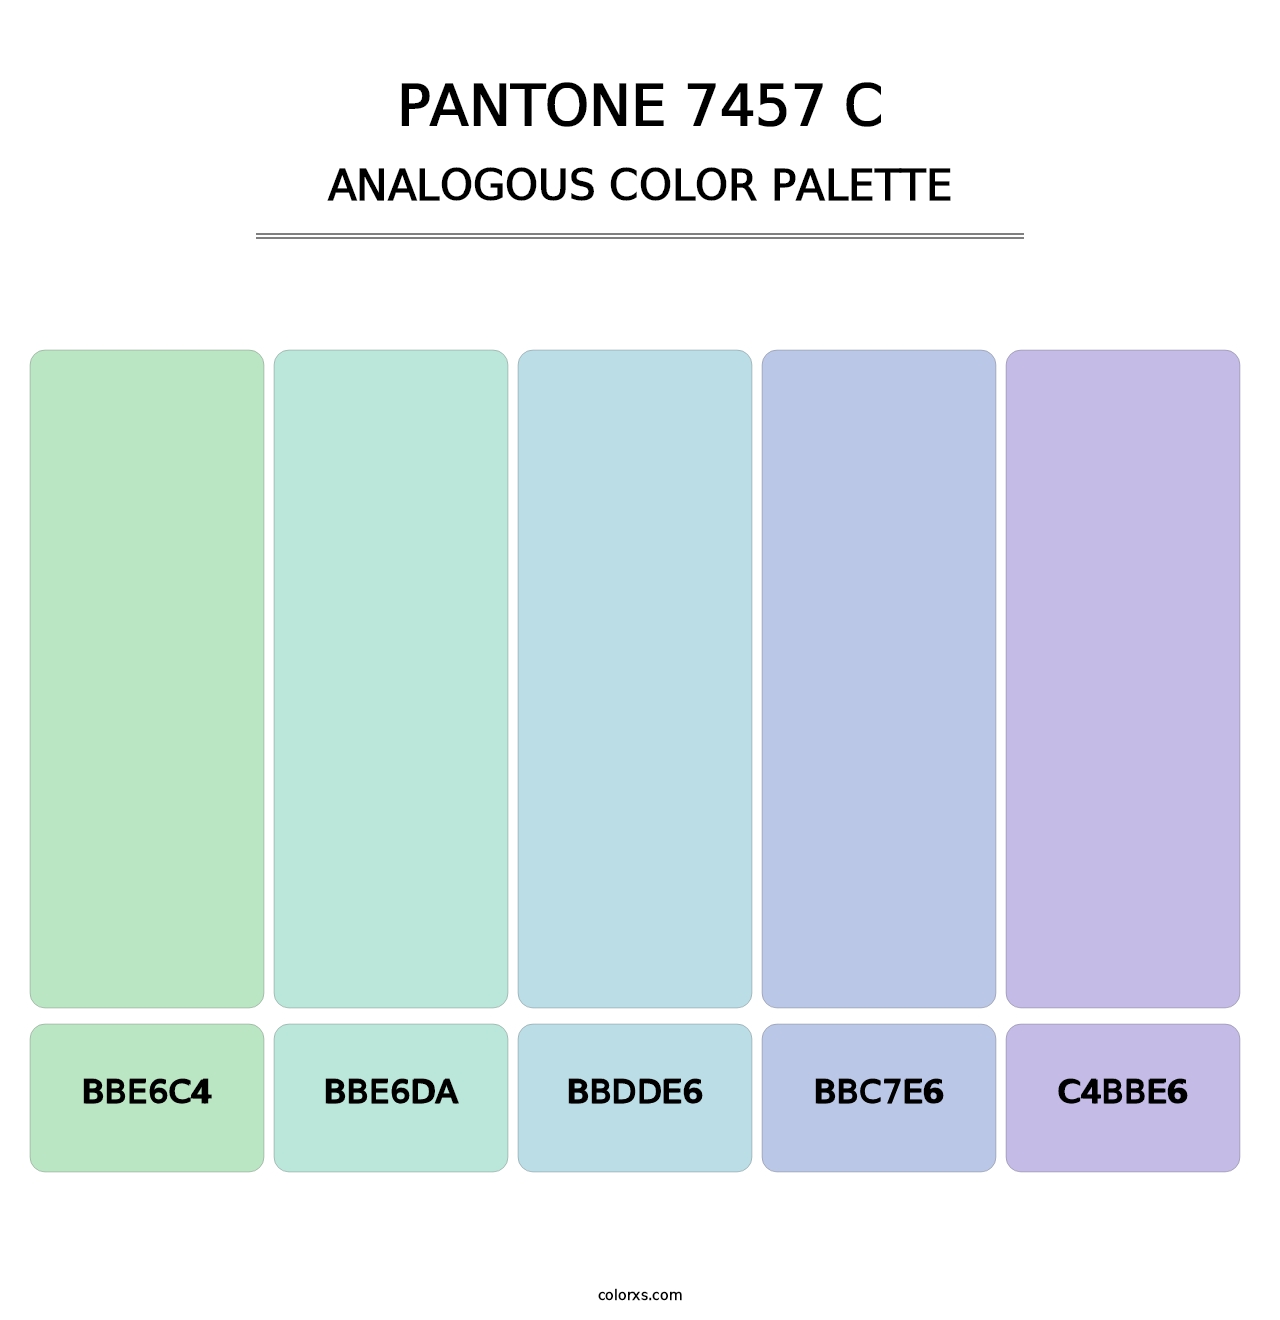 PANTONE 7457 C - Analogous Color Palette